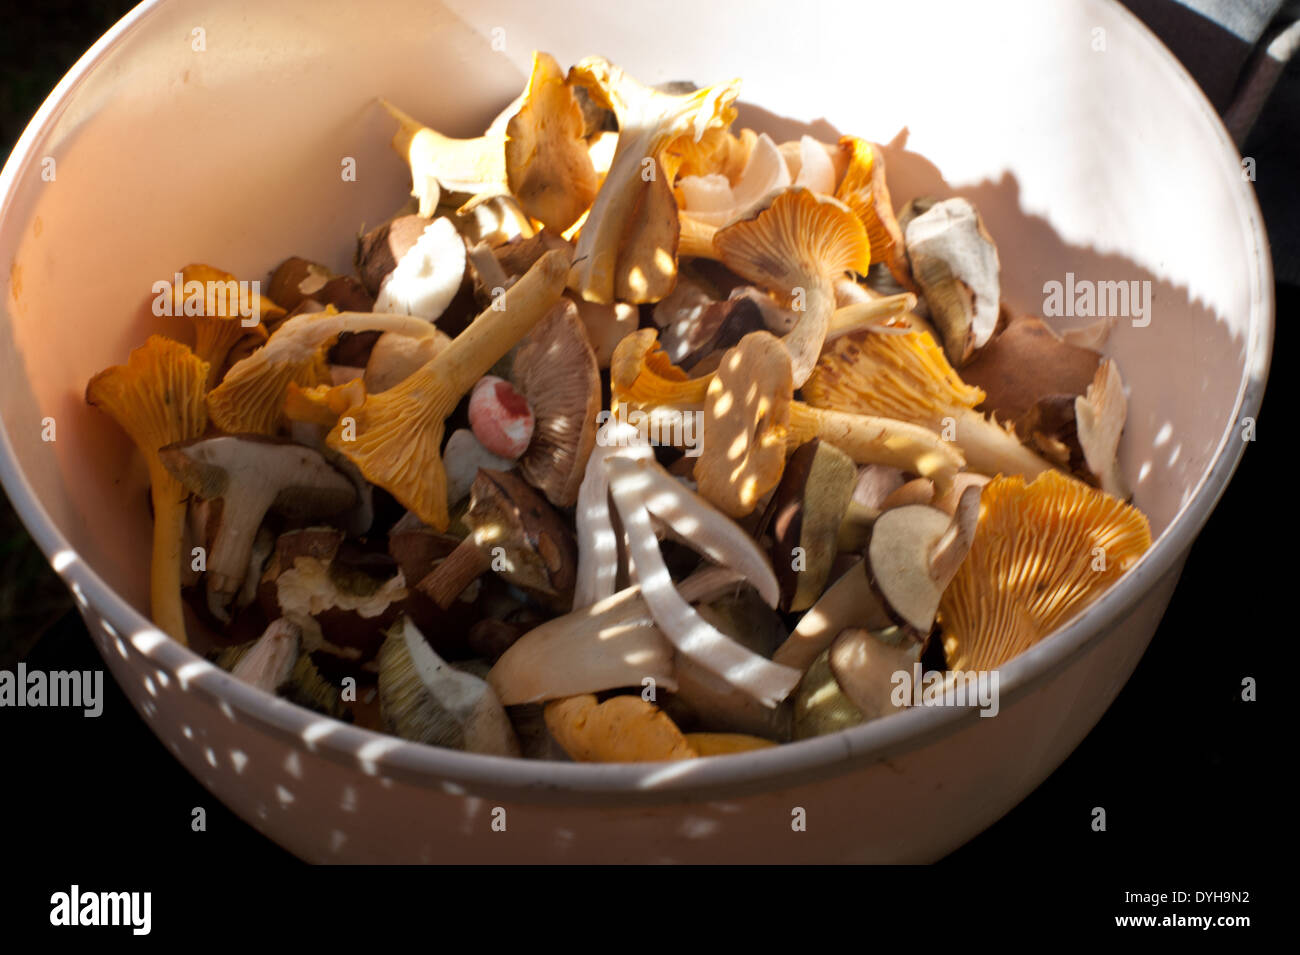 Un bol de champignons des bois fraîchement cueillis, prêt à être nettoyé et cuit. Banque D'Images